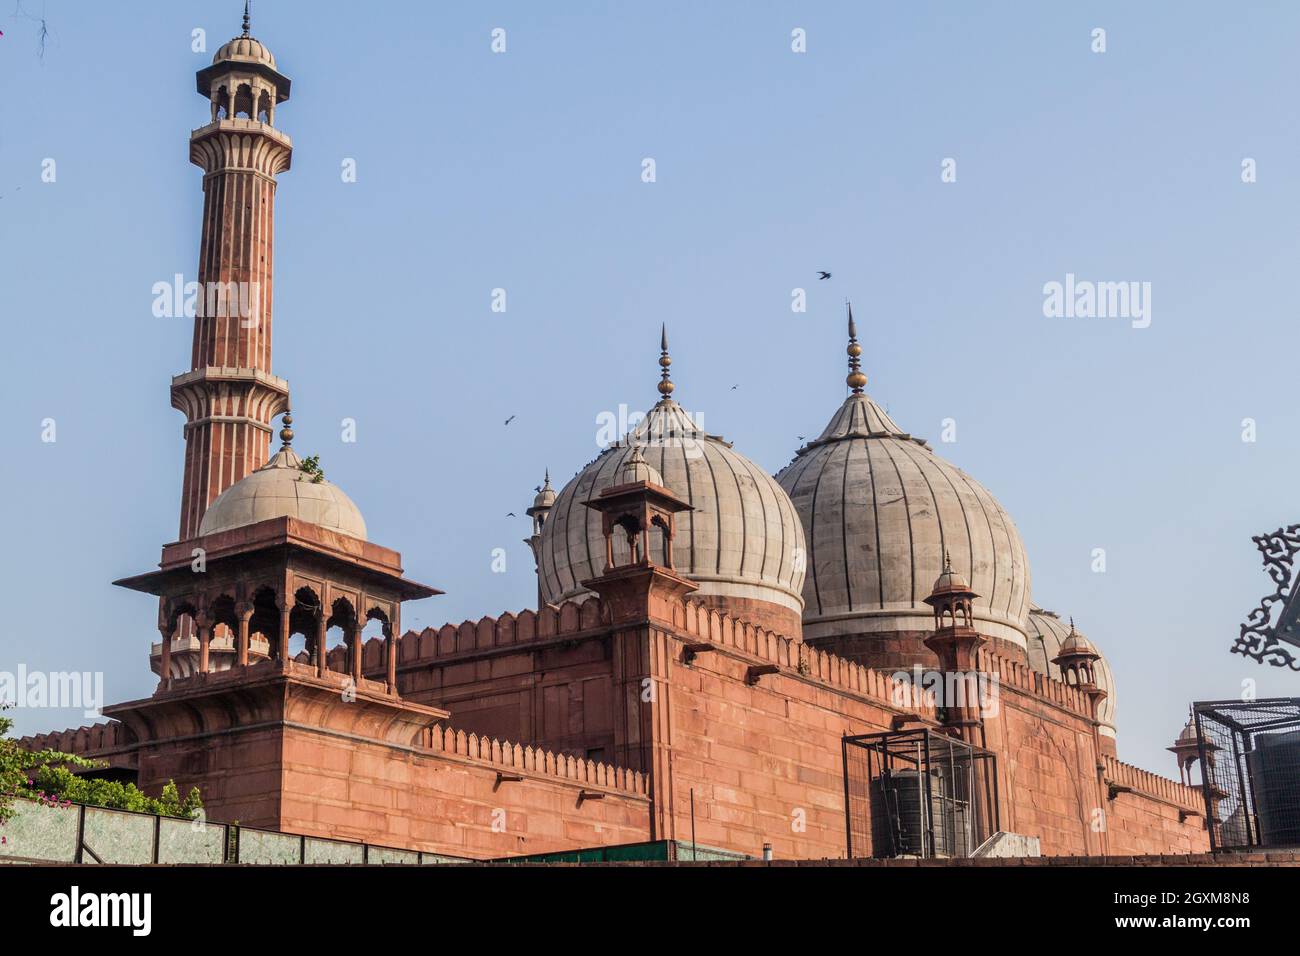 La mosquée Jama Masjid de Delhi, Inde Banque D'Images